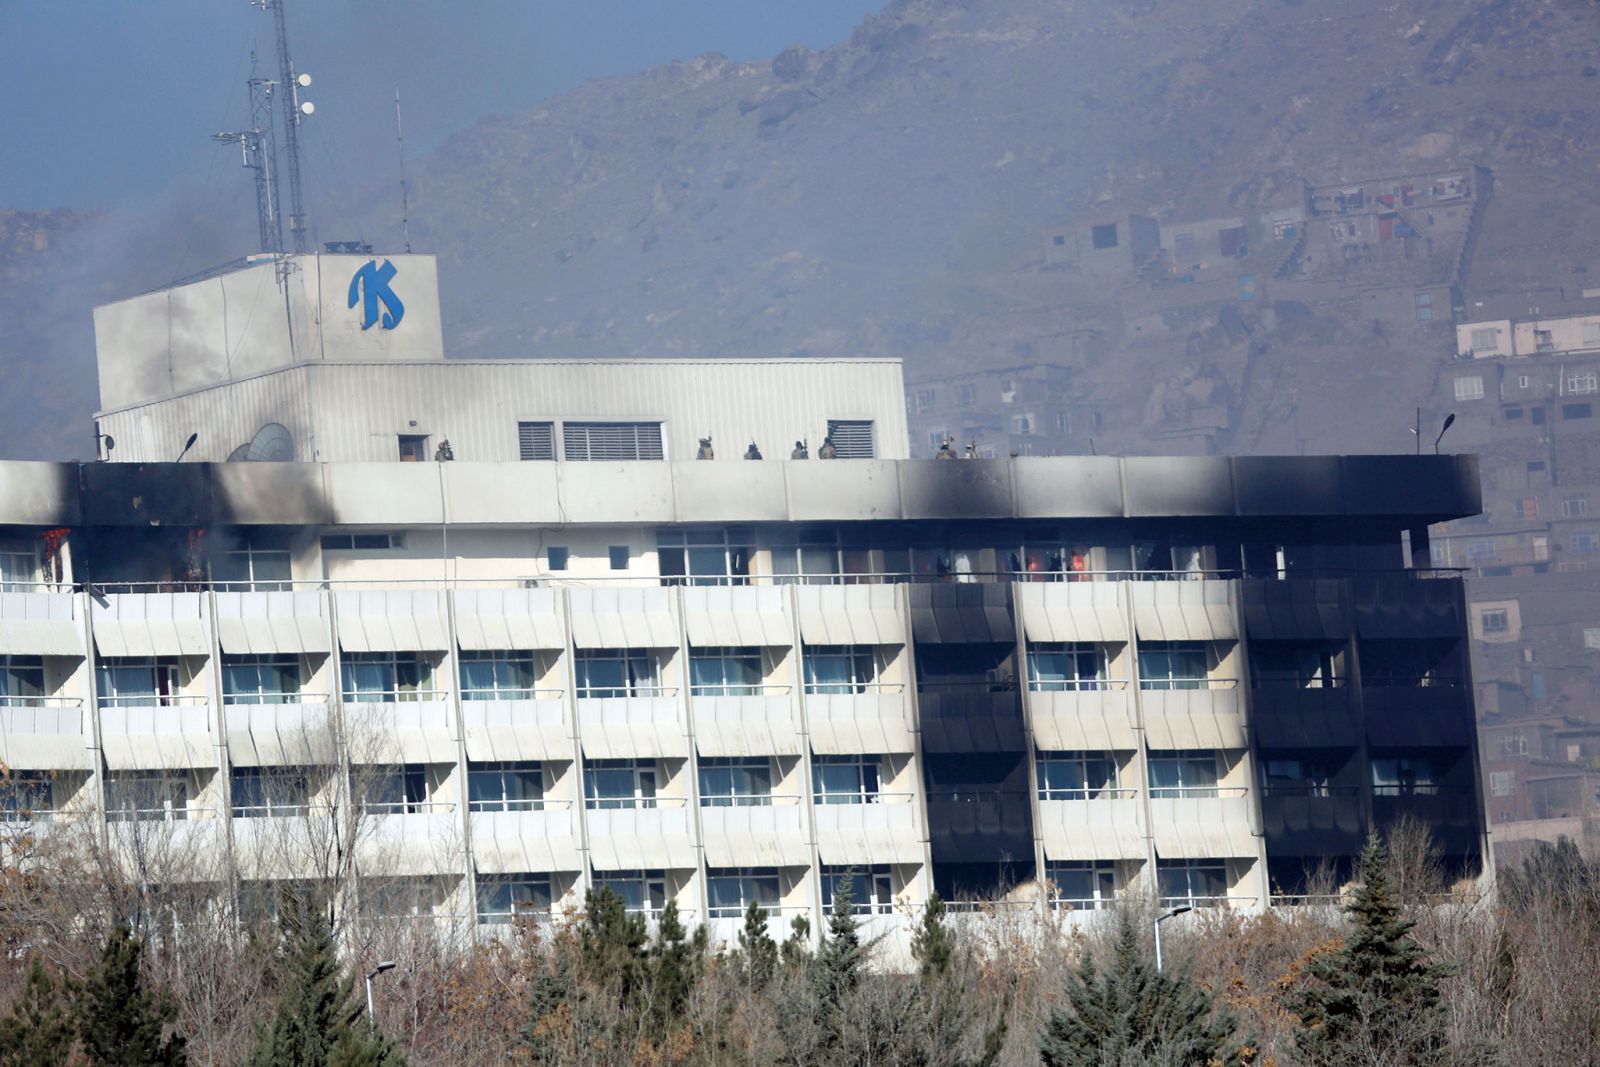 塔利班襲阿國酒店18死